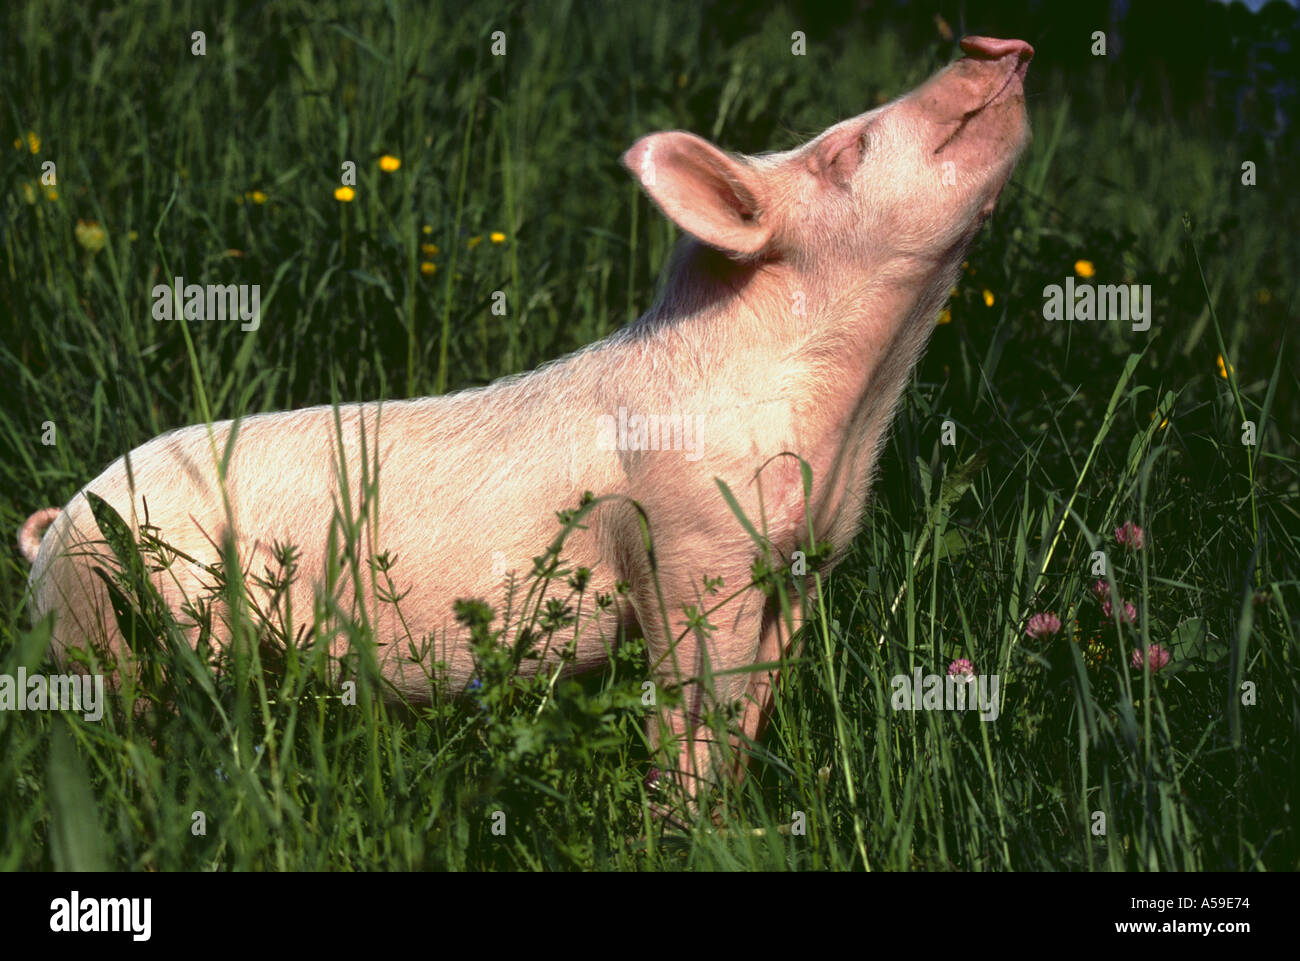 Junge Ferkel Schwein Tier Kreatur Kreaturen Säugetiere Säugetier Schwein Schweine Ferkel Ferkel im freien Animal Farm Stockfoto